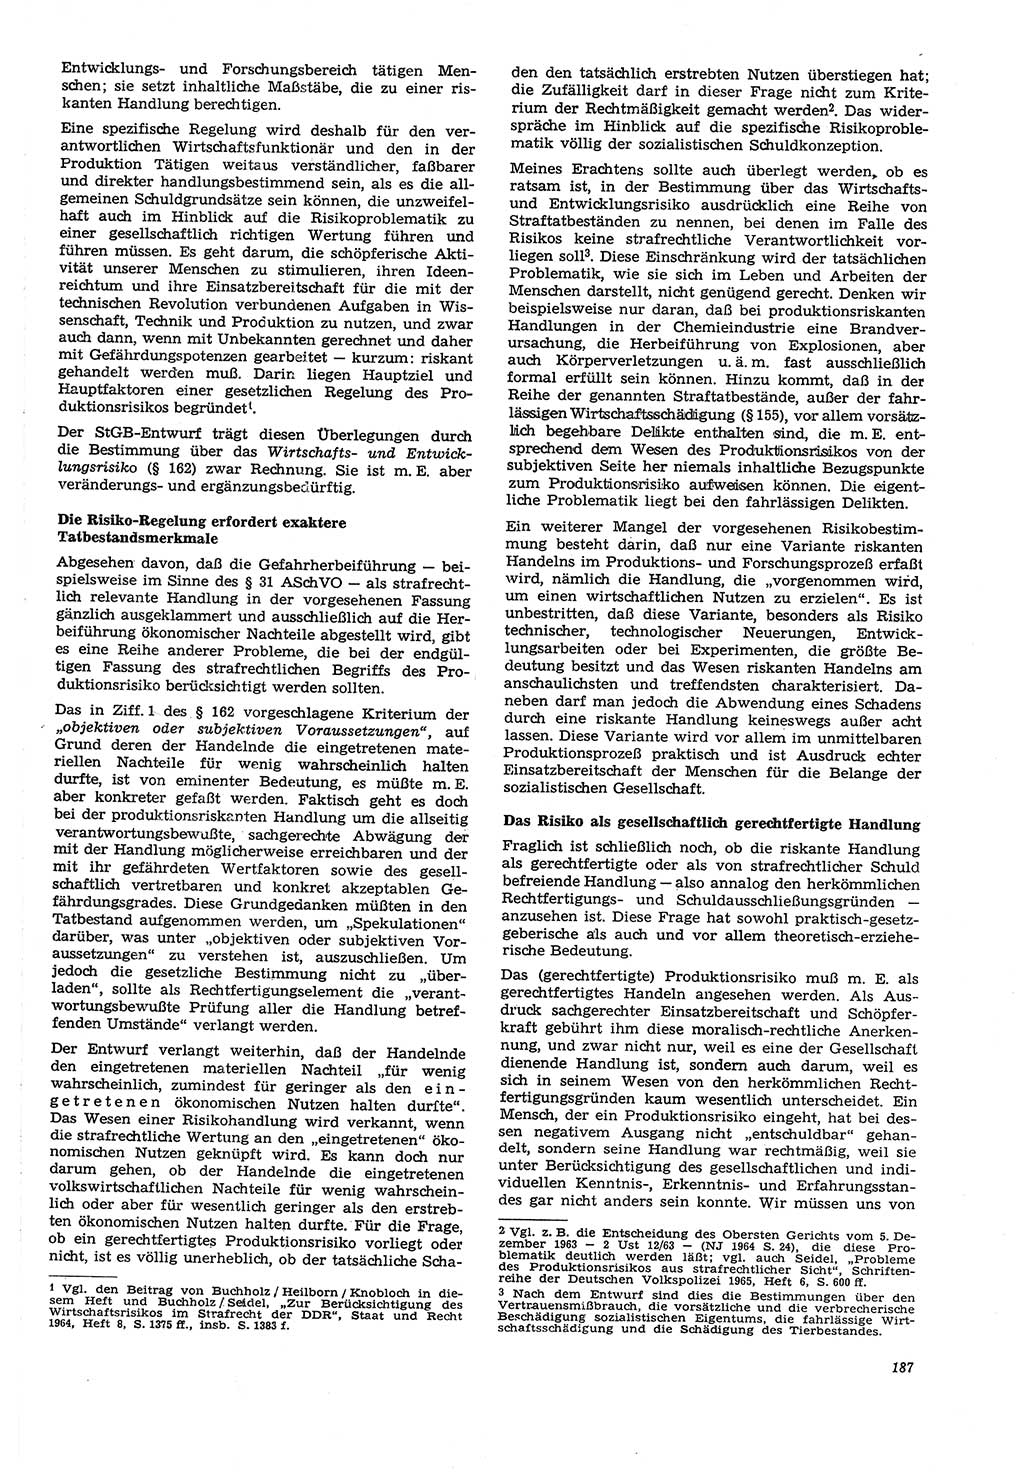 Neue Justiz (NJ), Zeitschrift für Recht und Rechtswissenschaft [Deutsche Demokratische Republik (DDR)], 21. Jahrgang 1967, Seite 187 (NJ DDR 1967, S. 187)